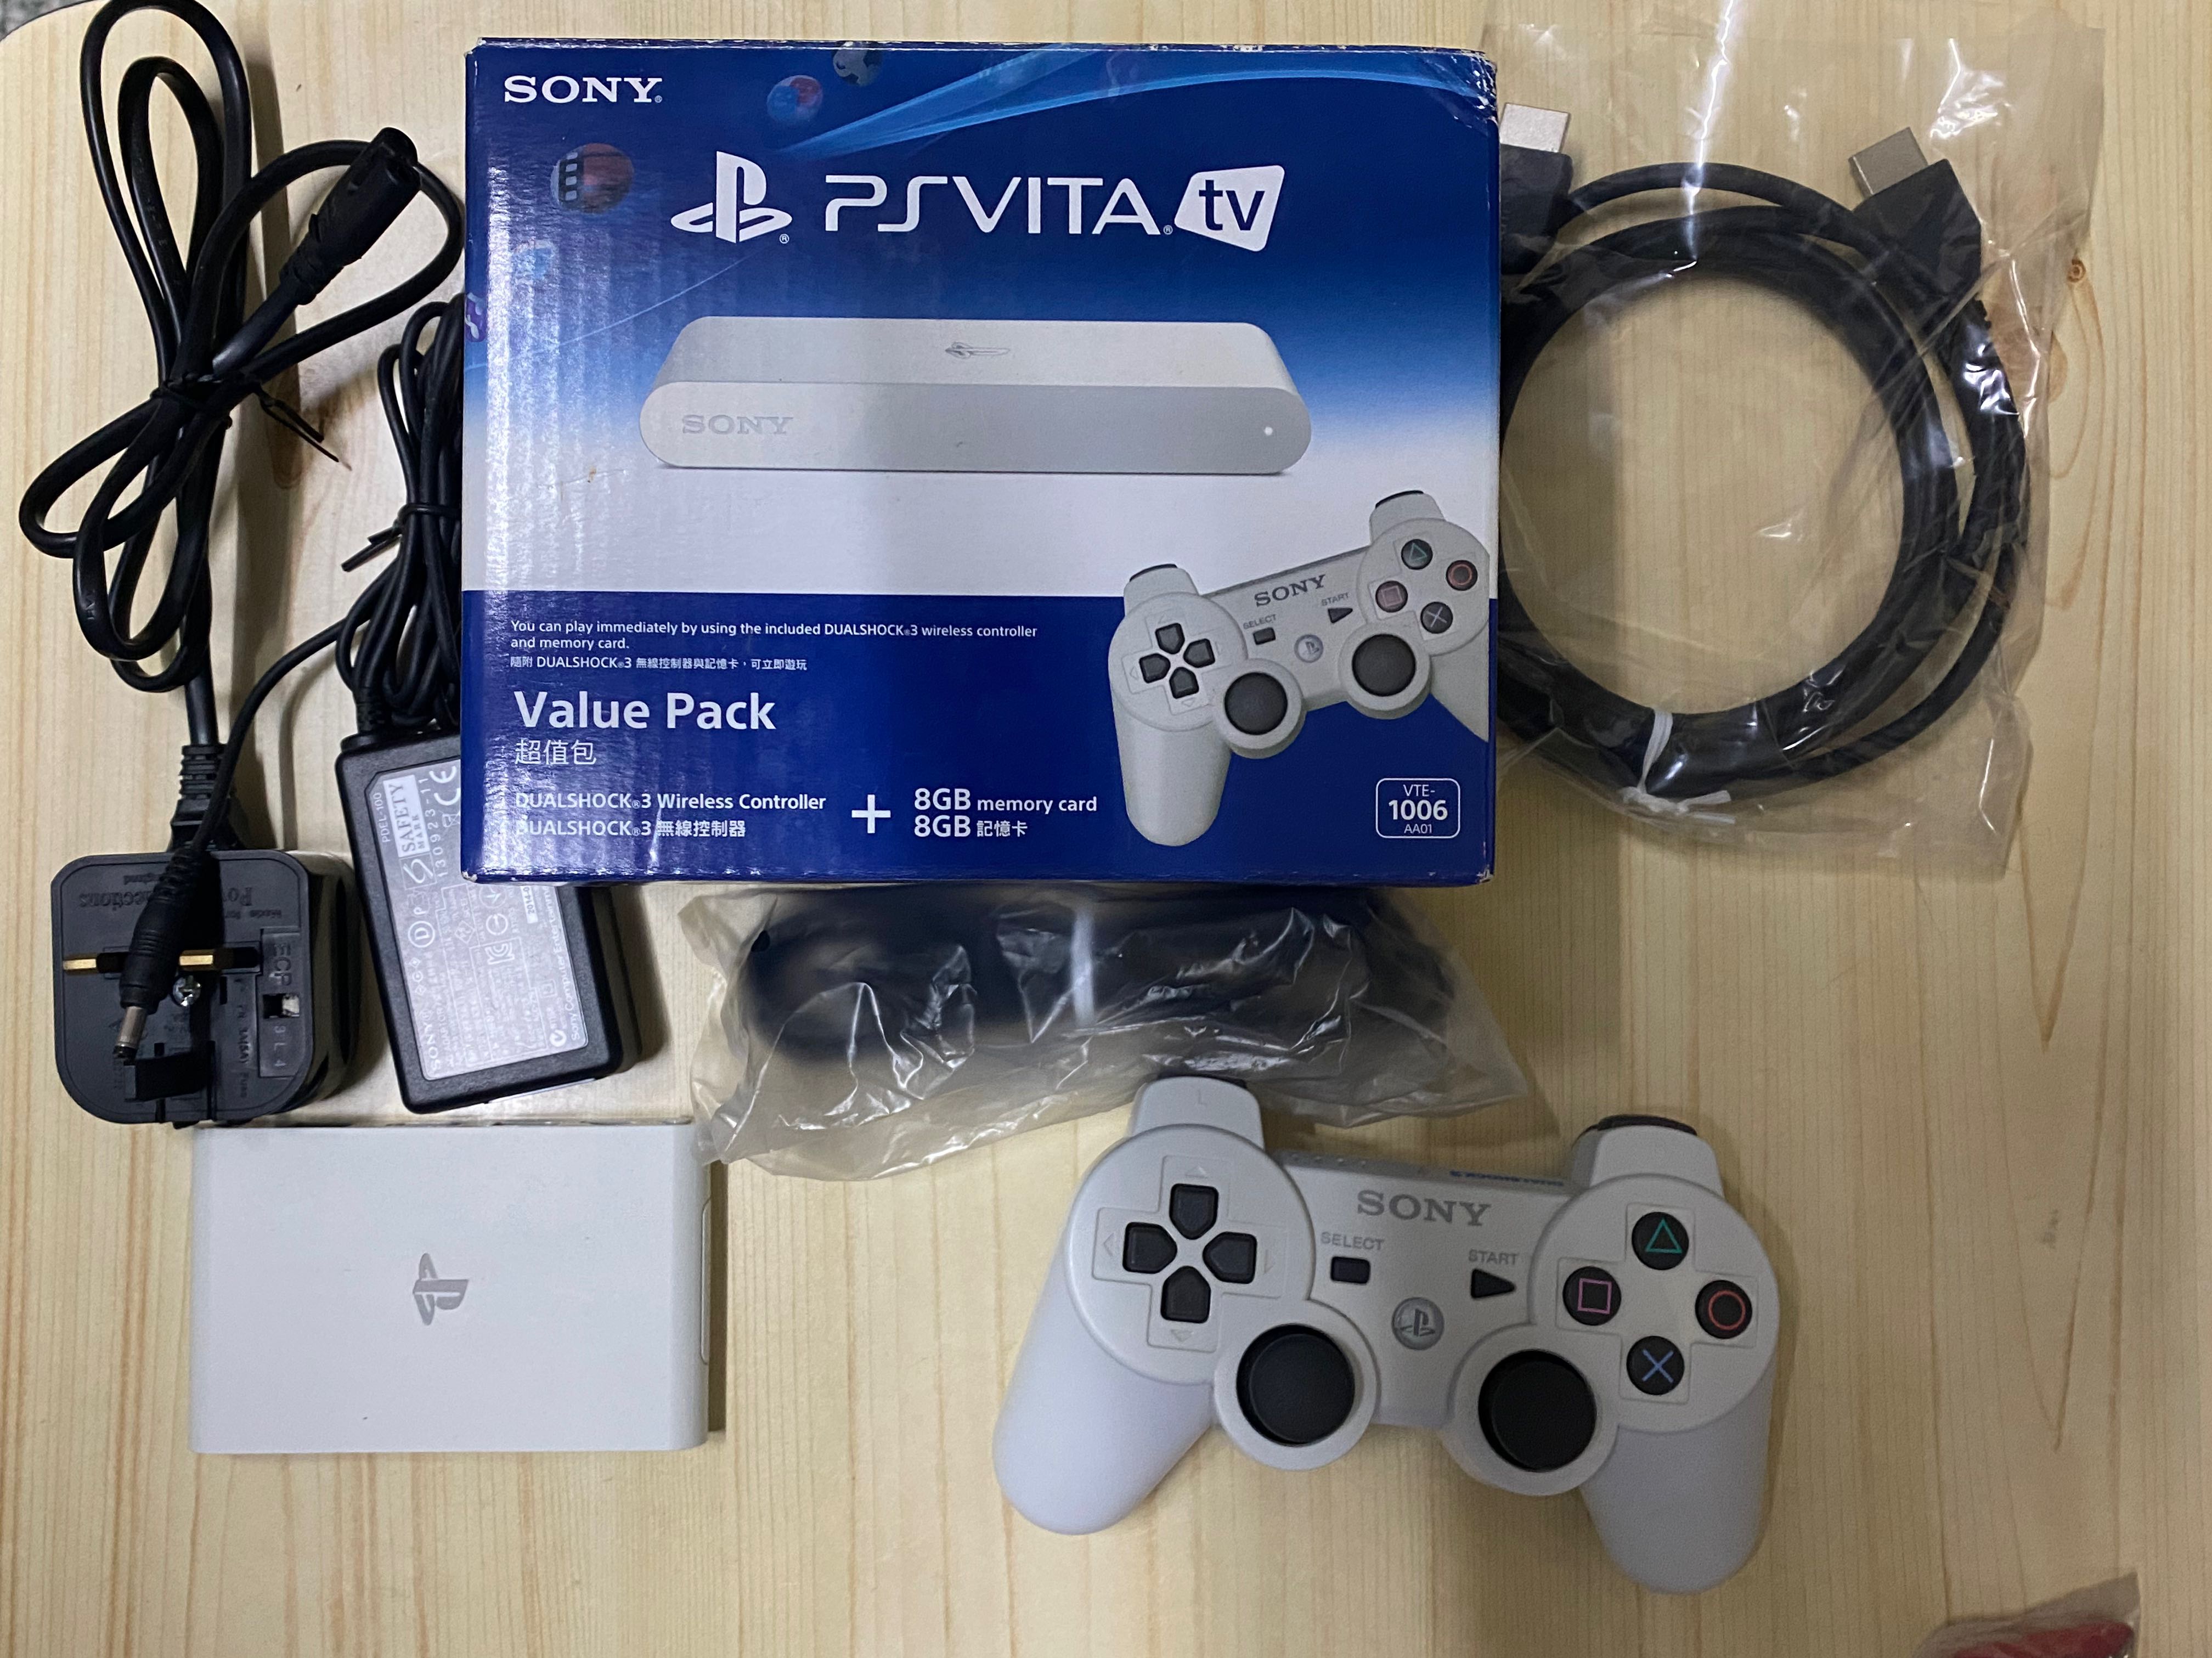 Sony psvita tv value pack （無破解）, 電子遊戲, 電子遊戲機